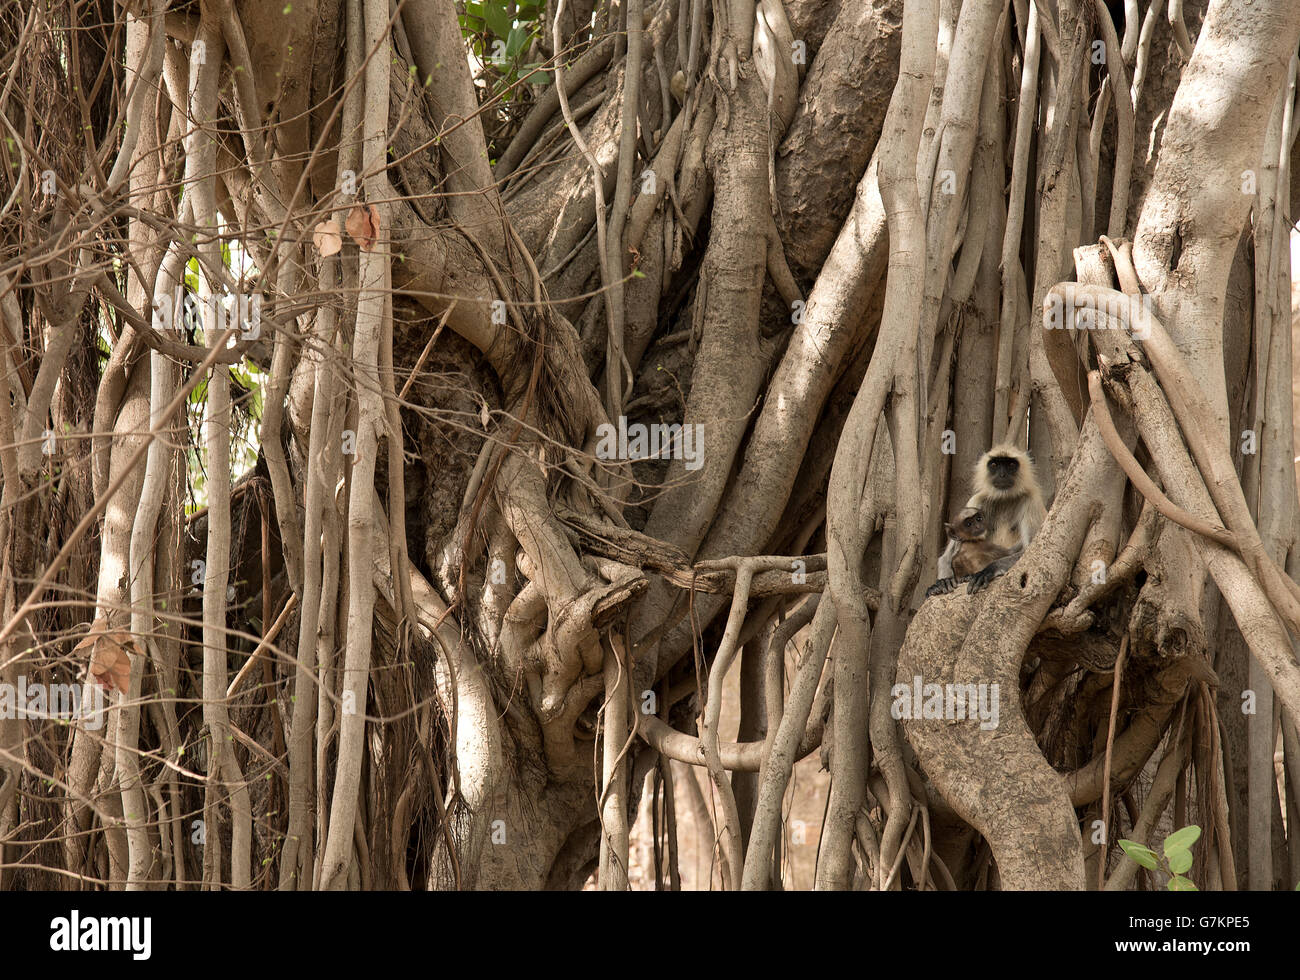 L'immagine di comune Langur ( Semnopithecus entellus ) è stata presa nel parco nazionale di Ranthambore, India Foto Stock